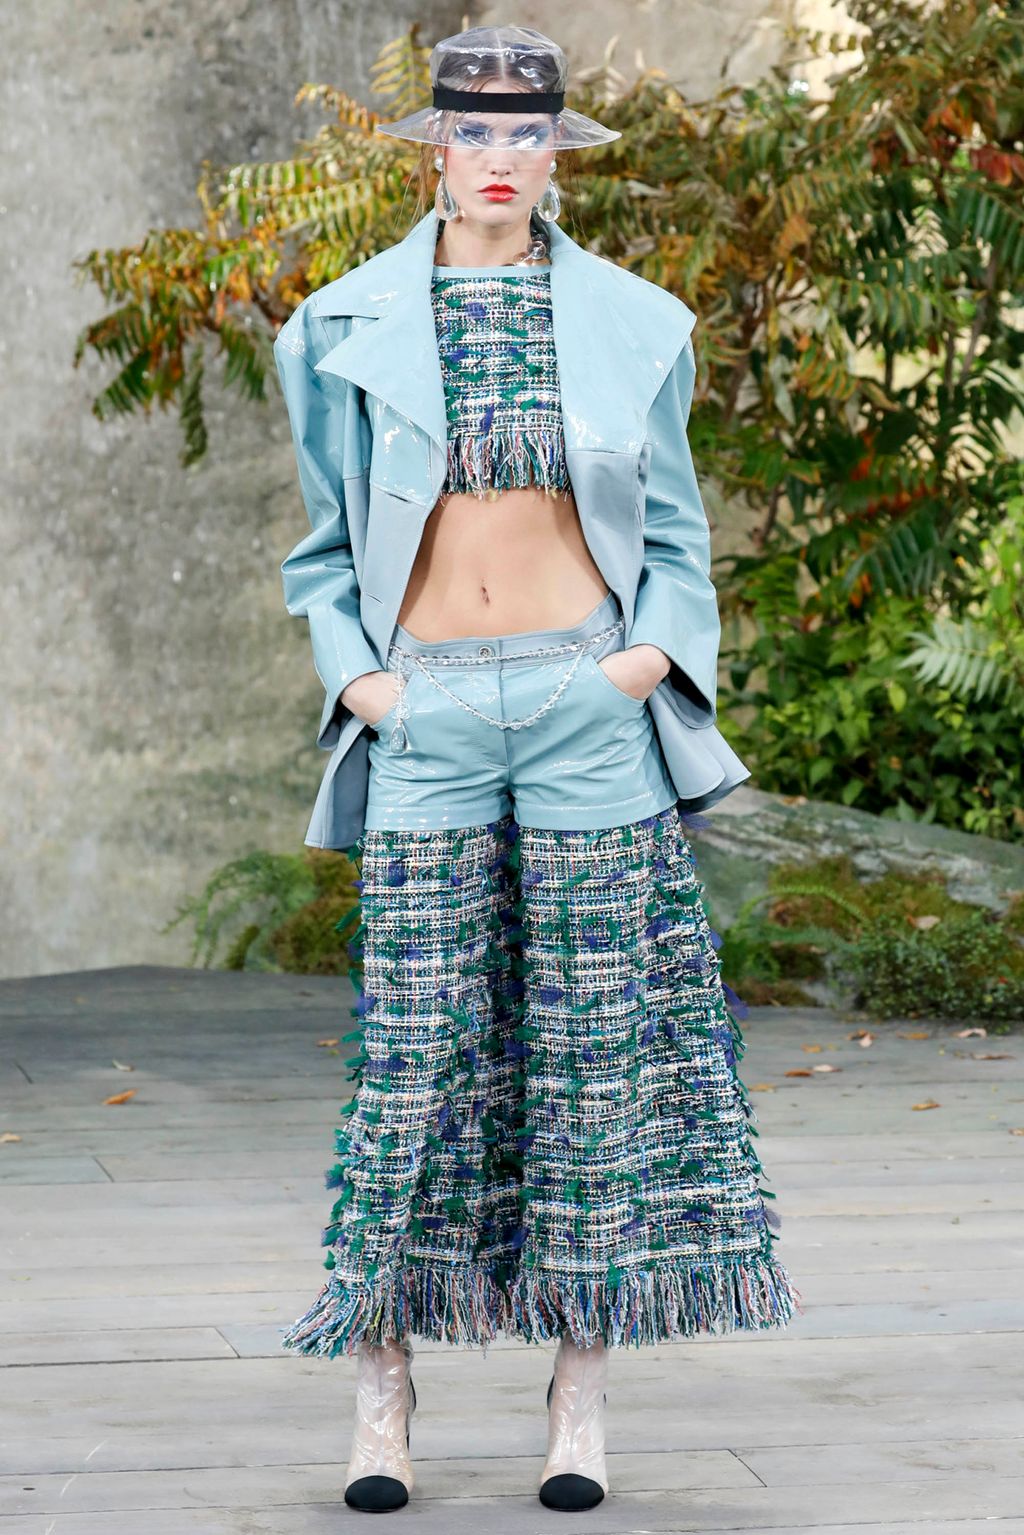 Chanel S/S 18 womenswear #4 - Tagwalk: The Fashion Search Engine